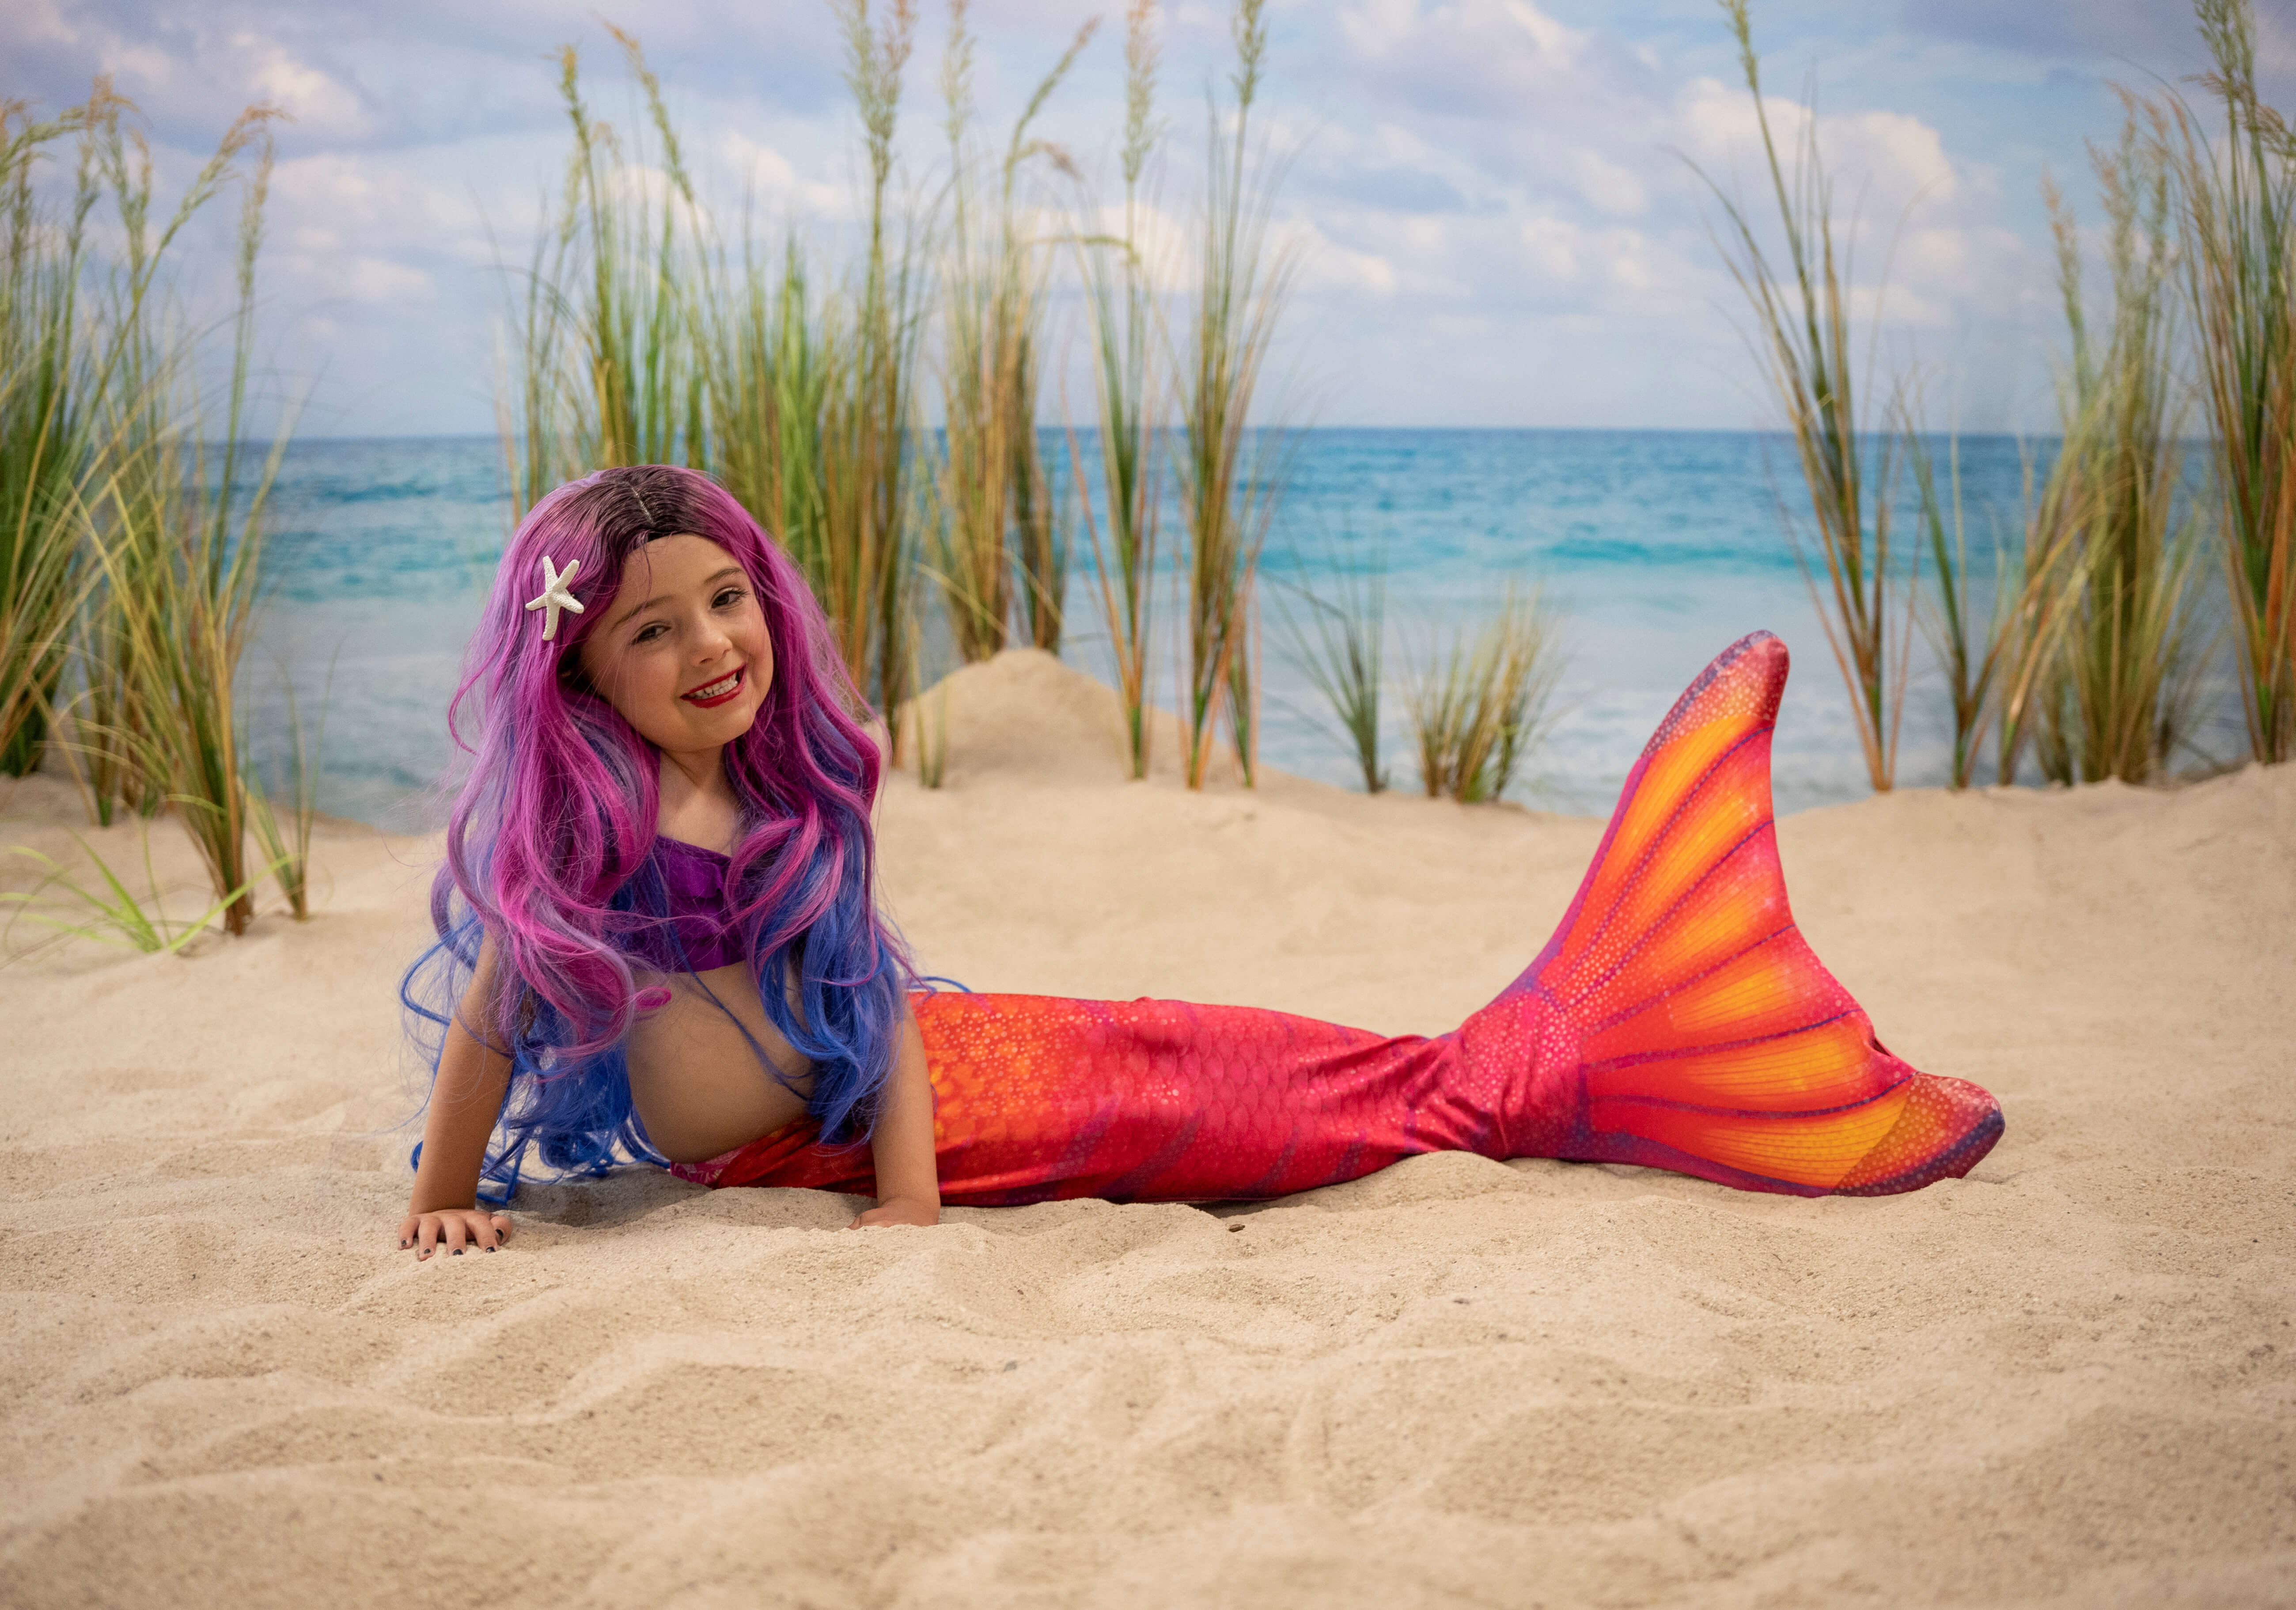 Hilton Head Mermaid photoshoot